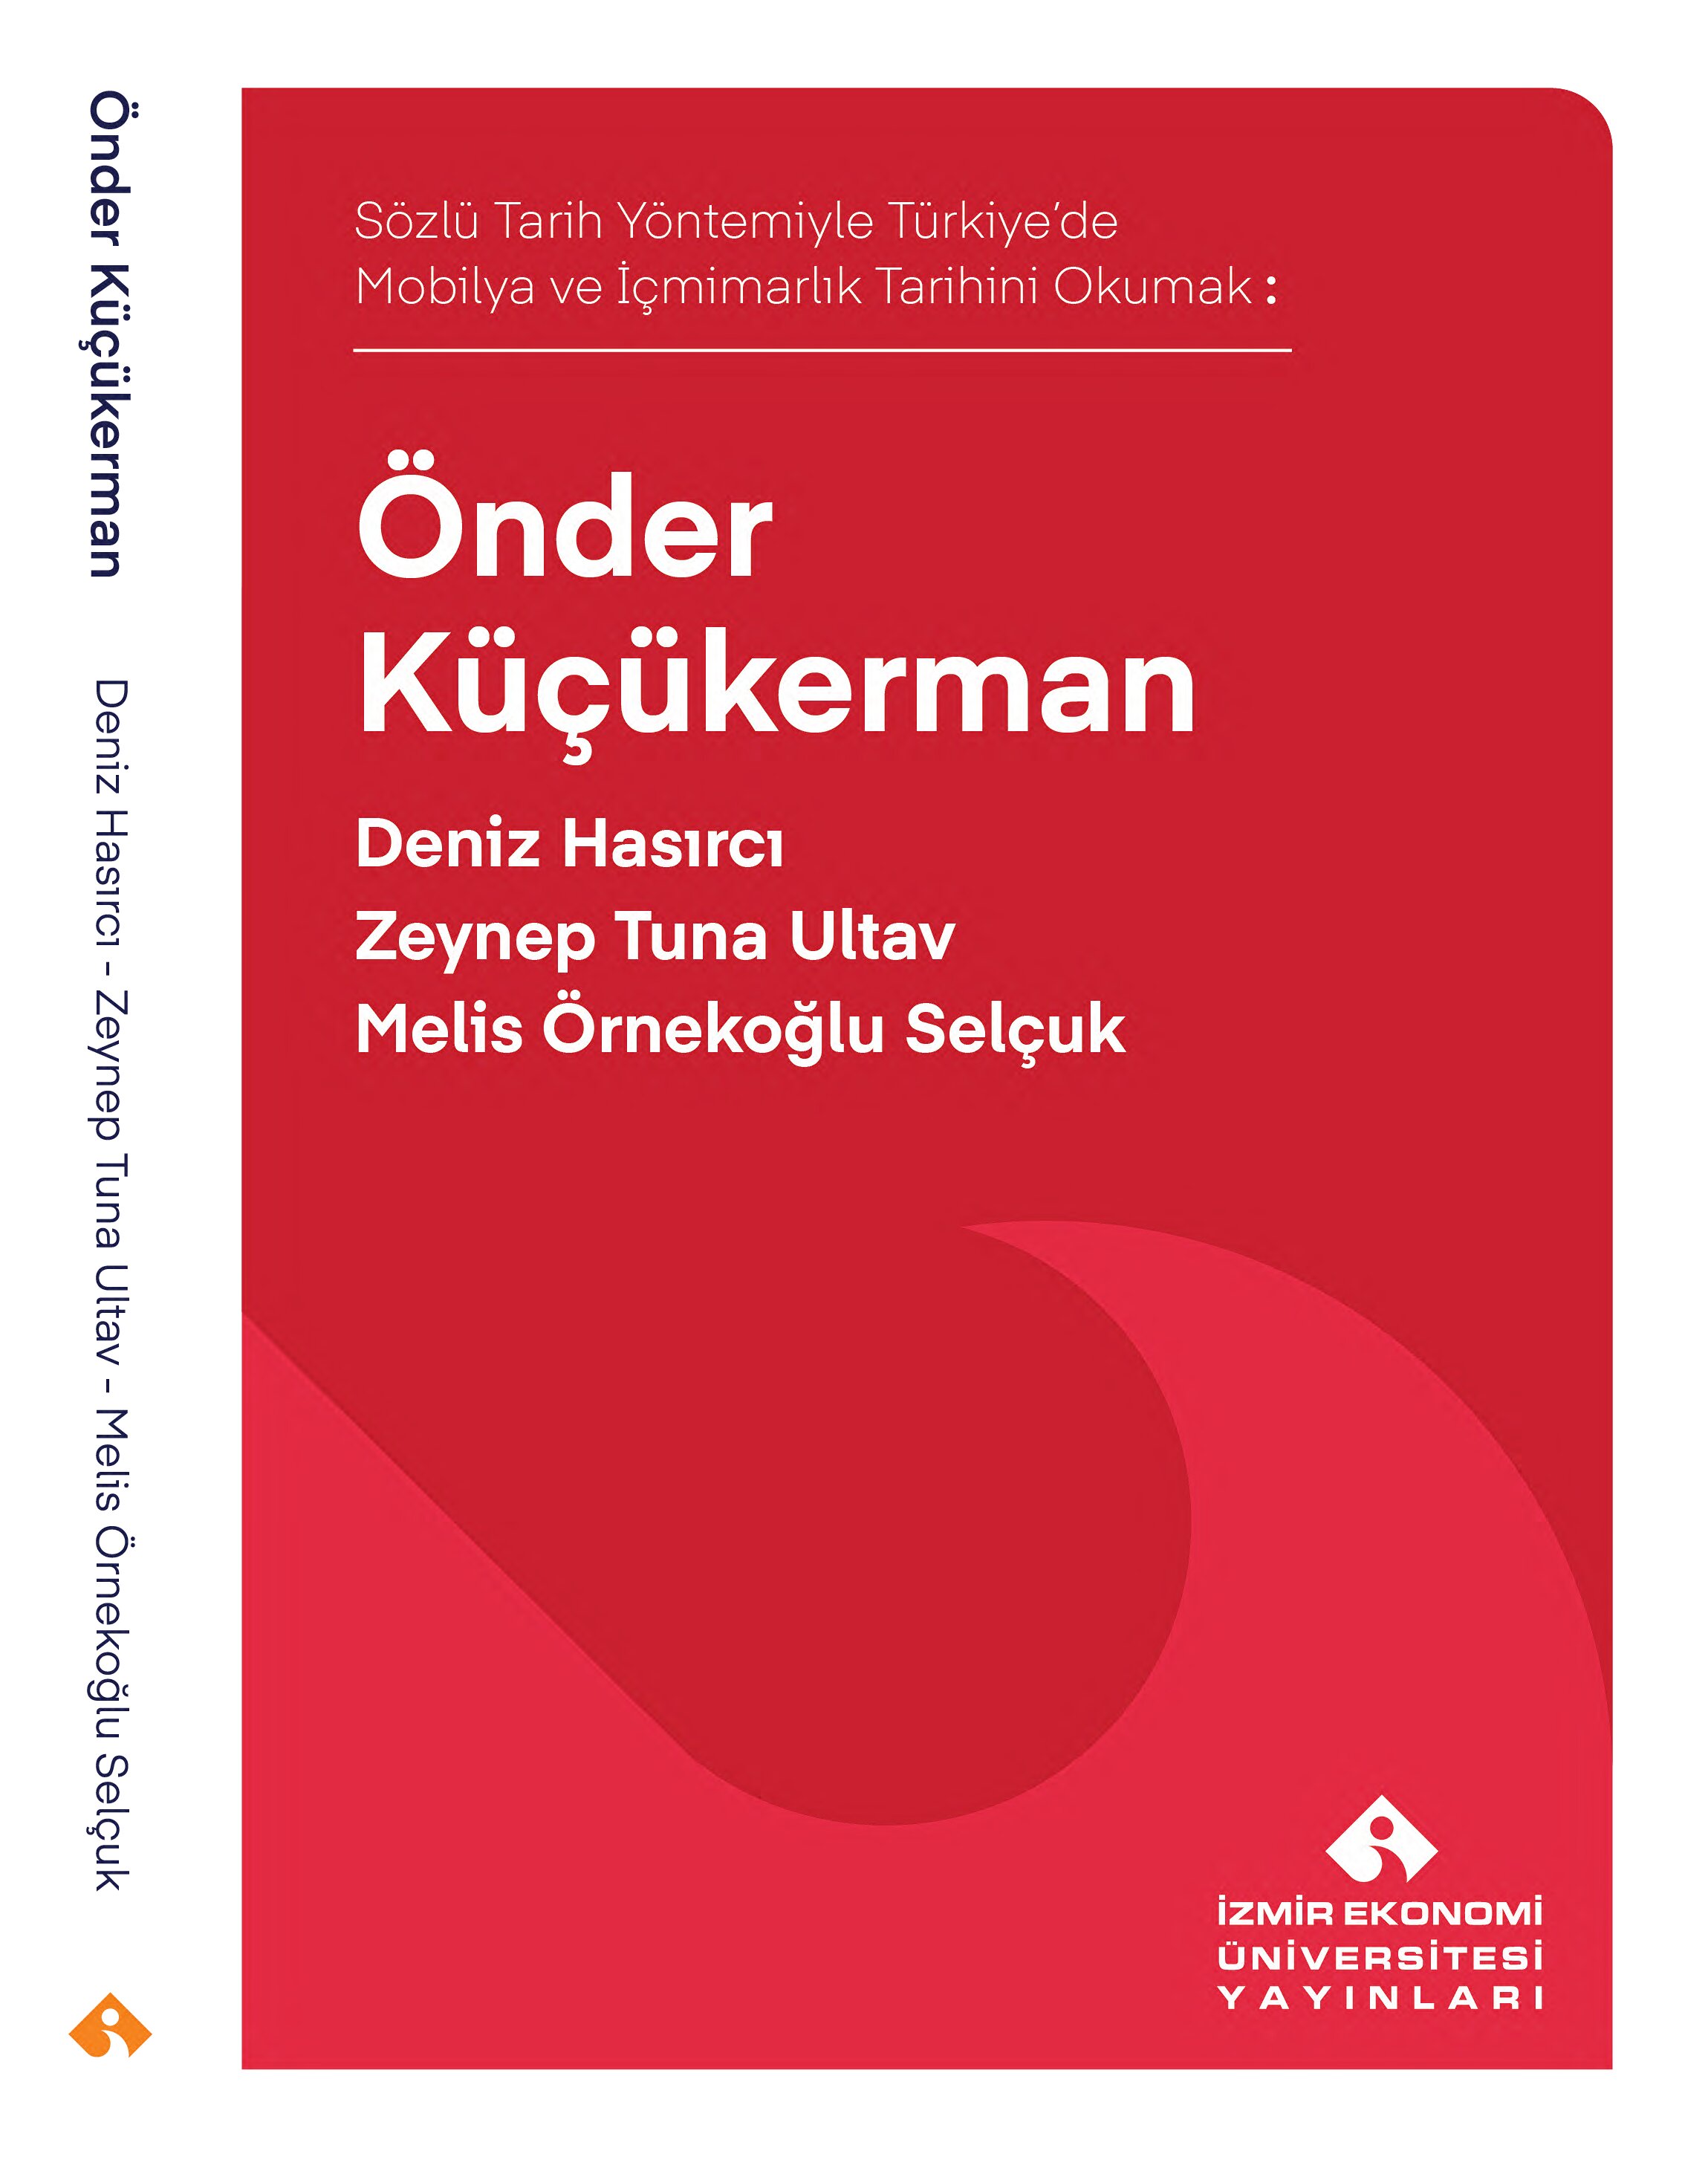 Sözlü Tarih Yöntemiyle Türkiye’de Mobilya ve İçmimarlık Tarihi Okumak: Önder Küçükerman